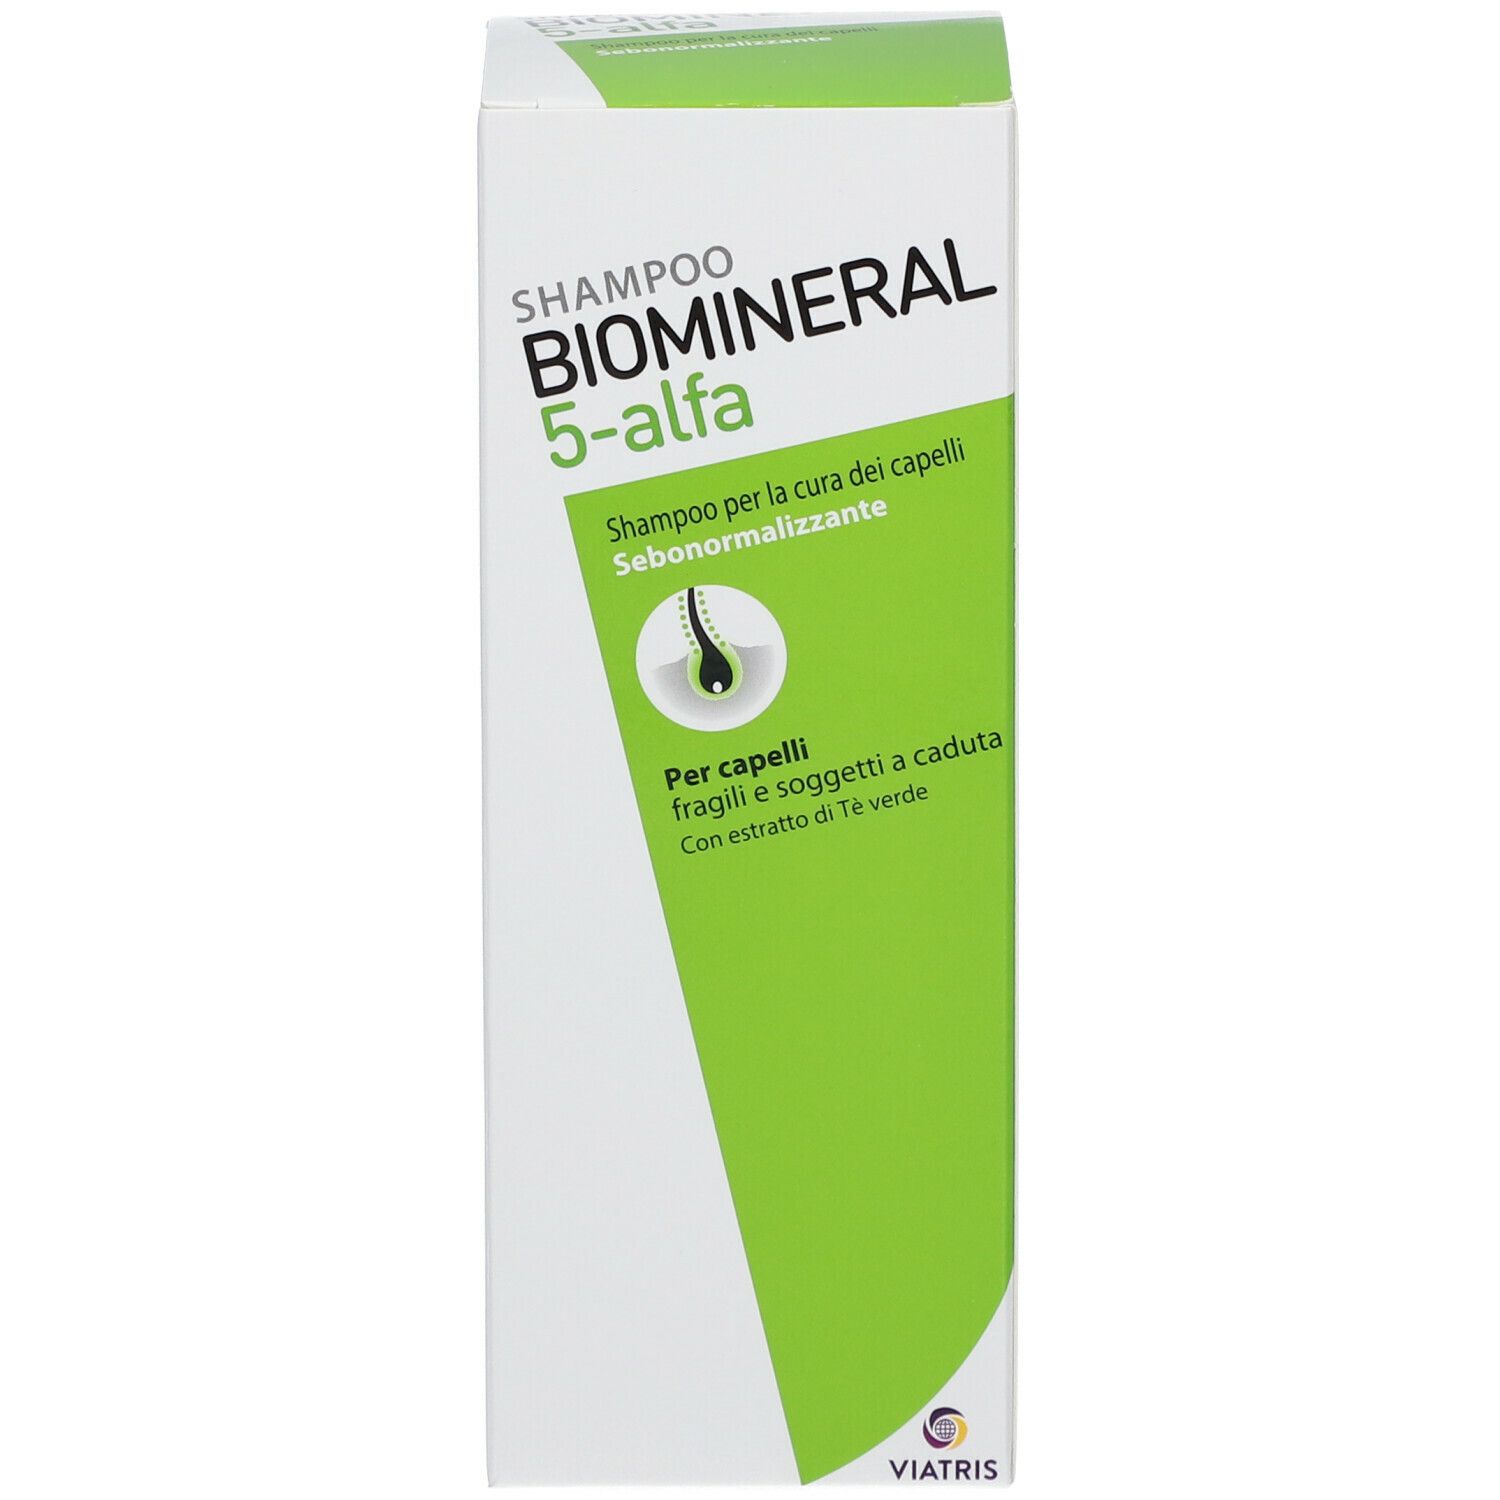 BIOMINERAL 5-alfa Shampoo